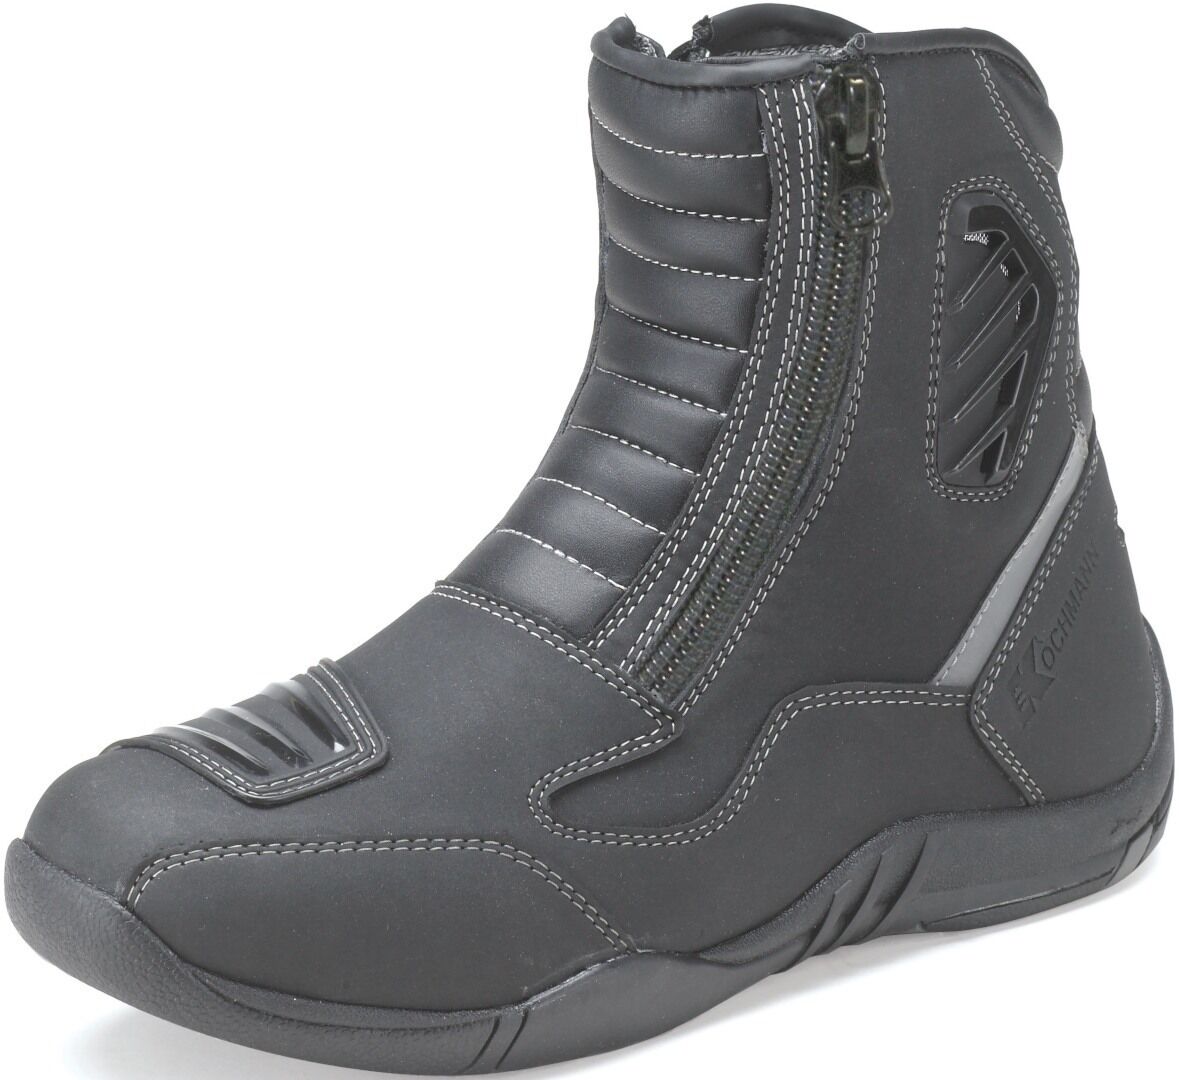 Kochmann Avus Waterproof Motorcycle Boots  - Black